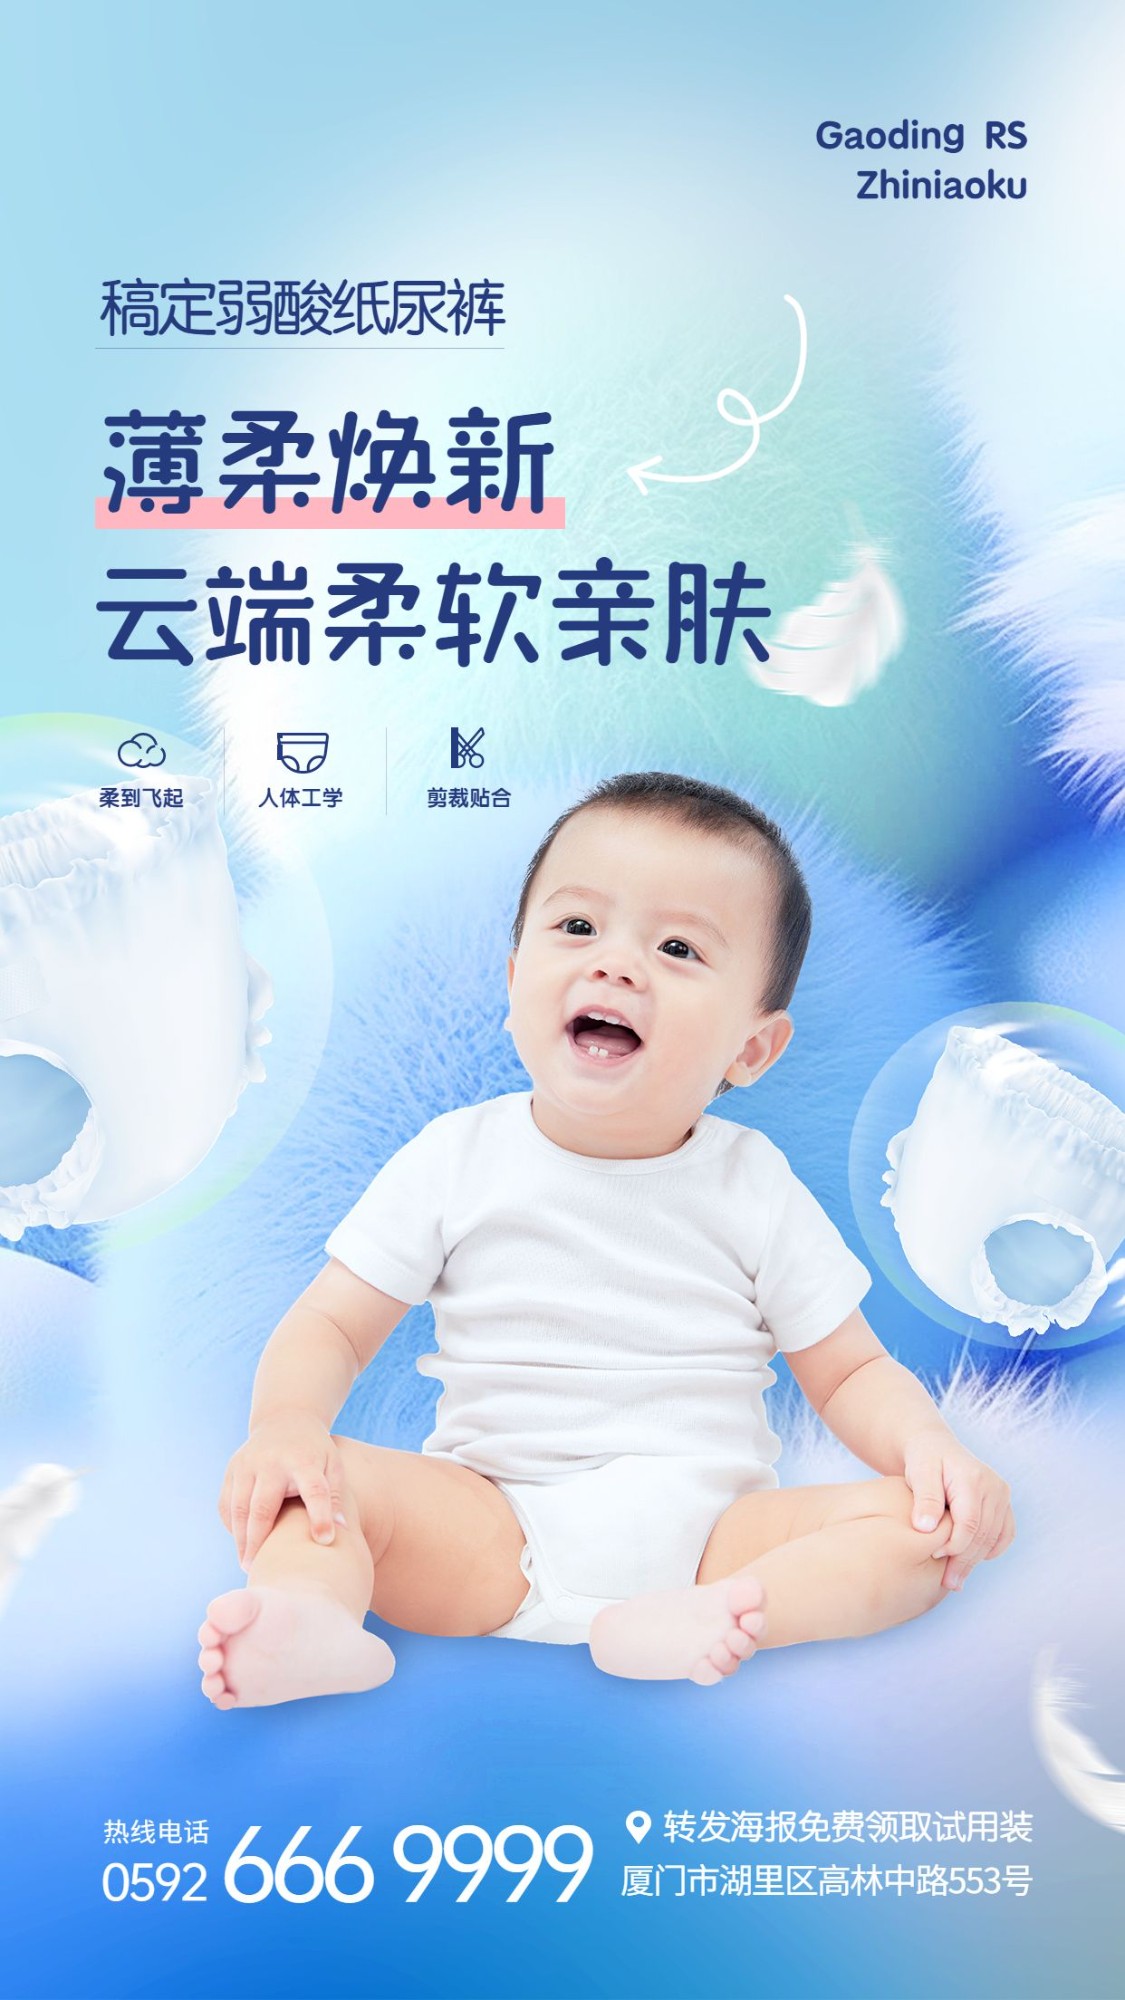 母婴亲子产品介绍活动宣传手机海报AIGC预览效果